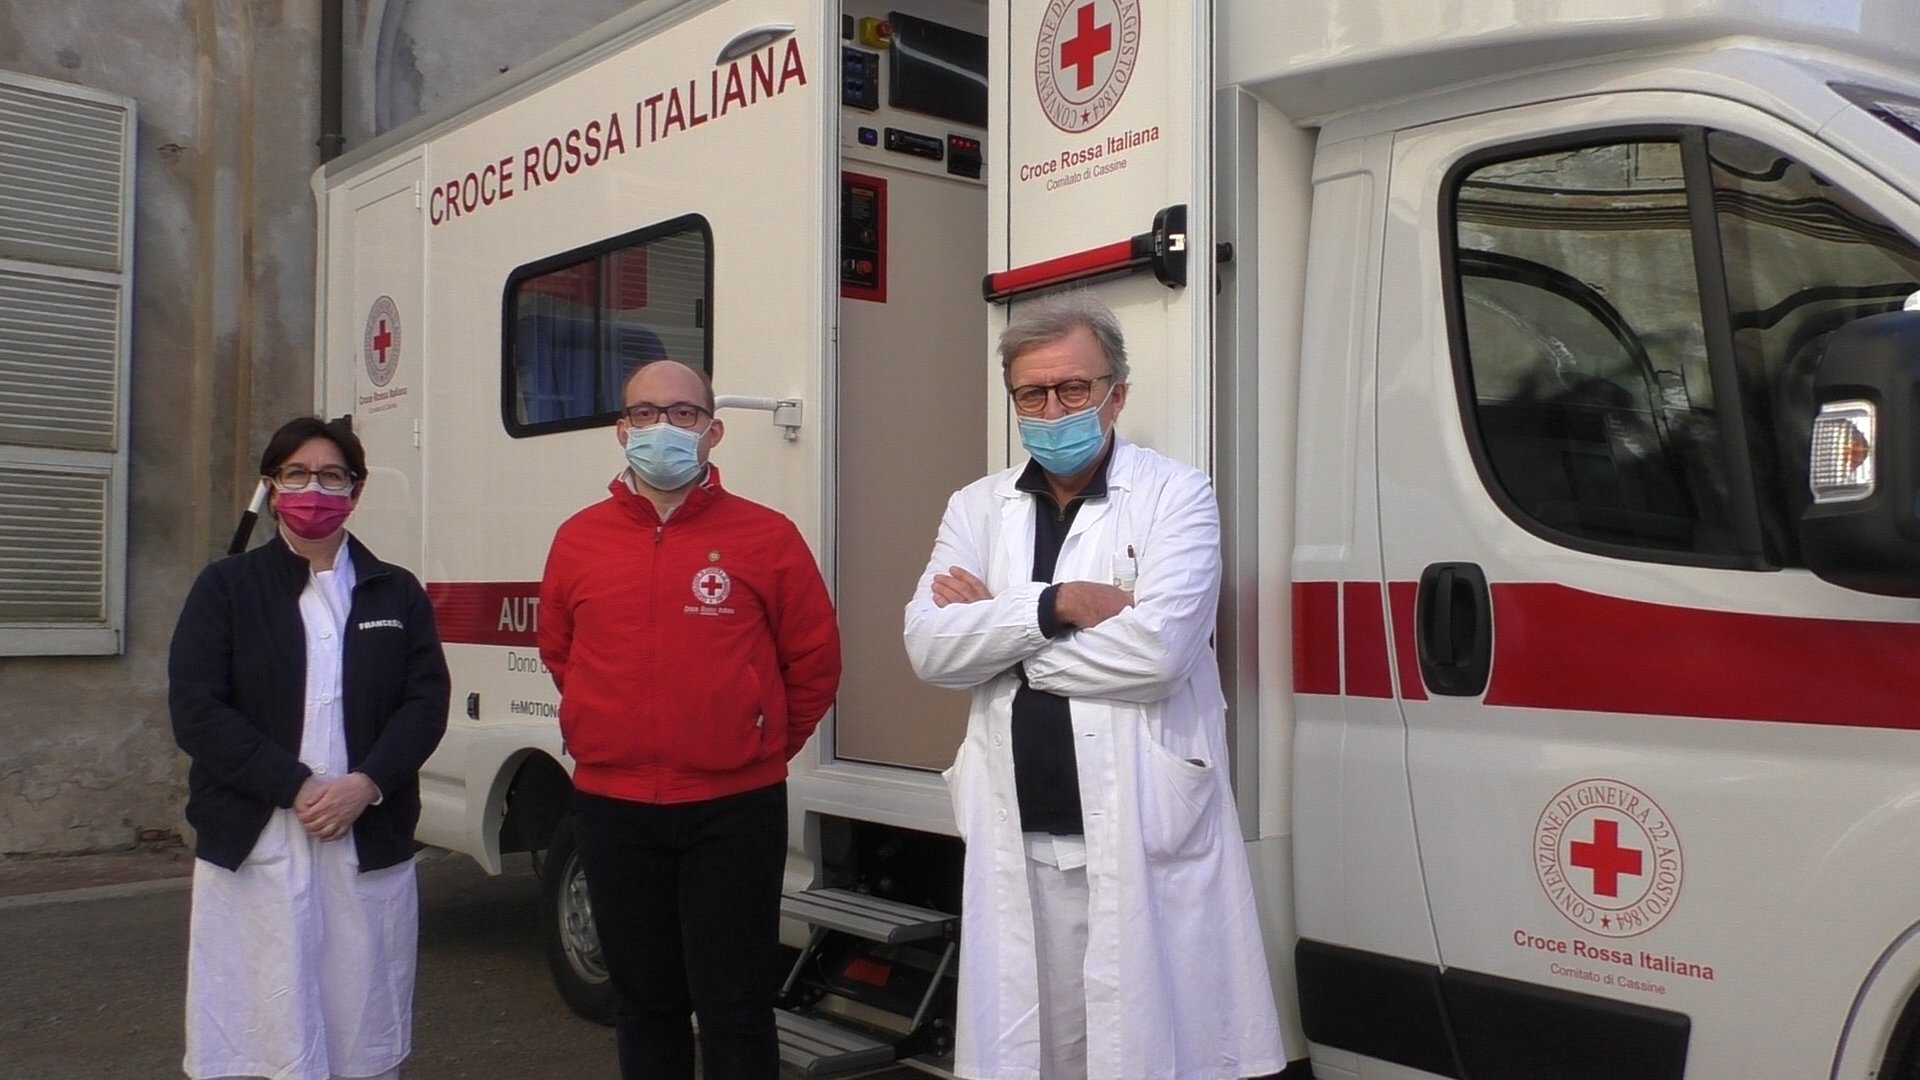 Raccolta sangue in provincia: un nuovo laboratorio mobile per raggiungere più donatori possibili